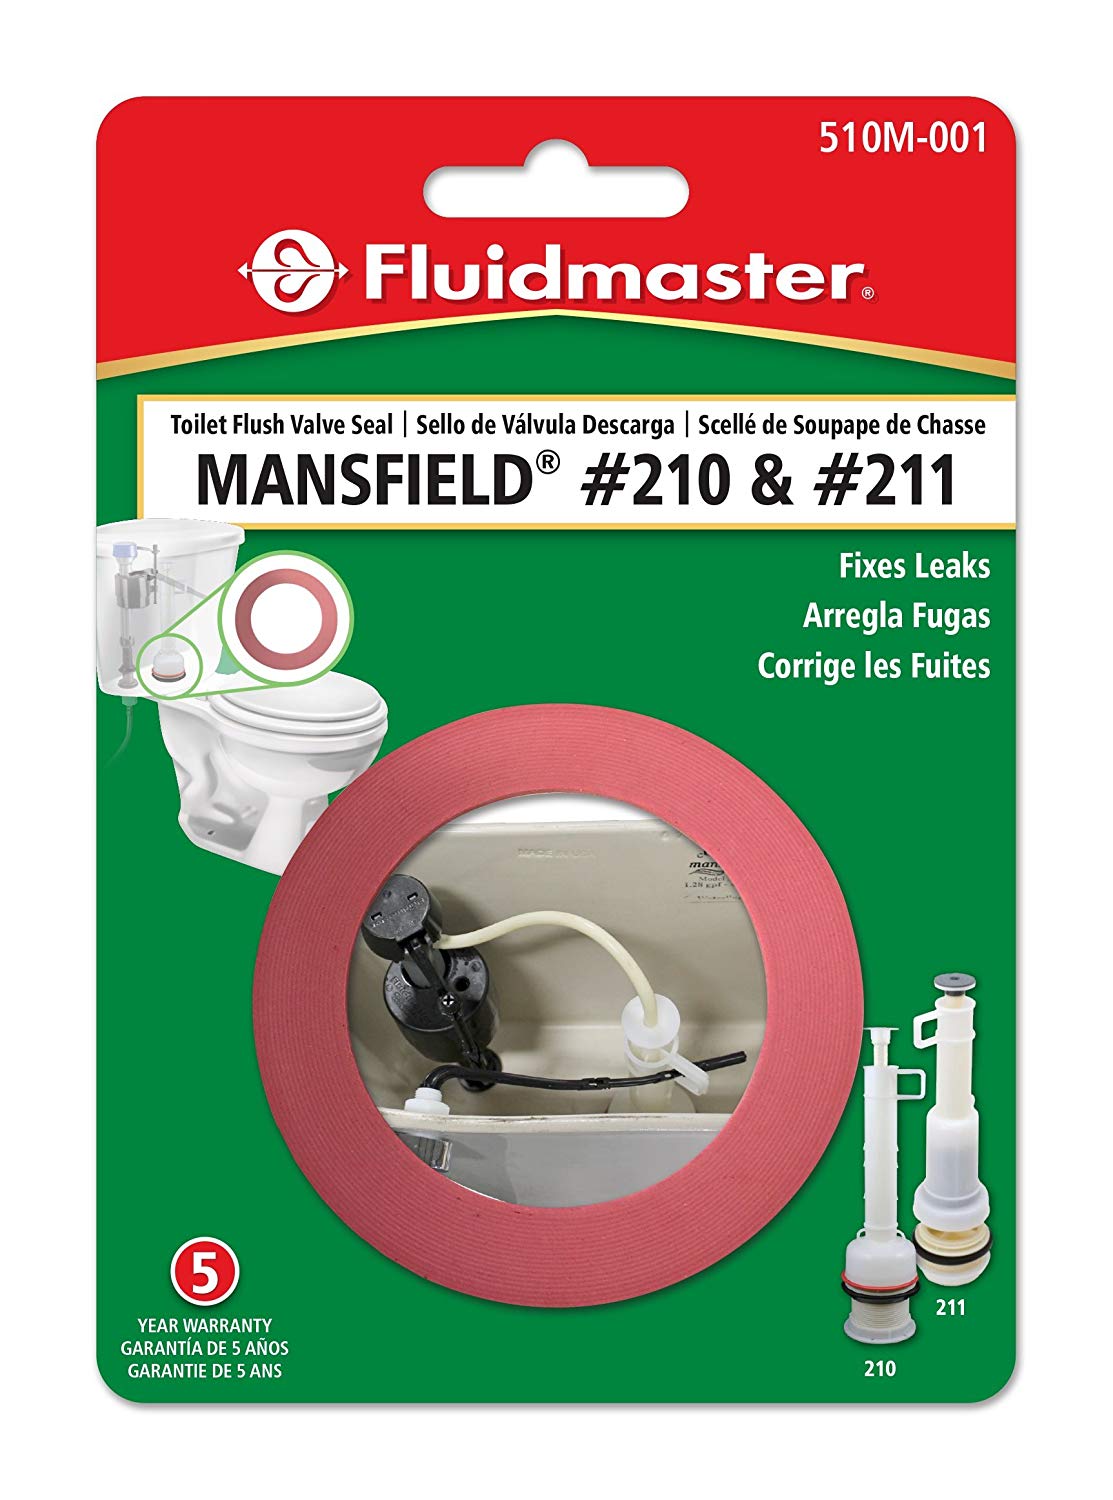 Fluidmaster 510M-001-P10 Toilet Flush Valve Seal for Mansfield Flush Valve